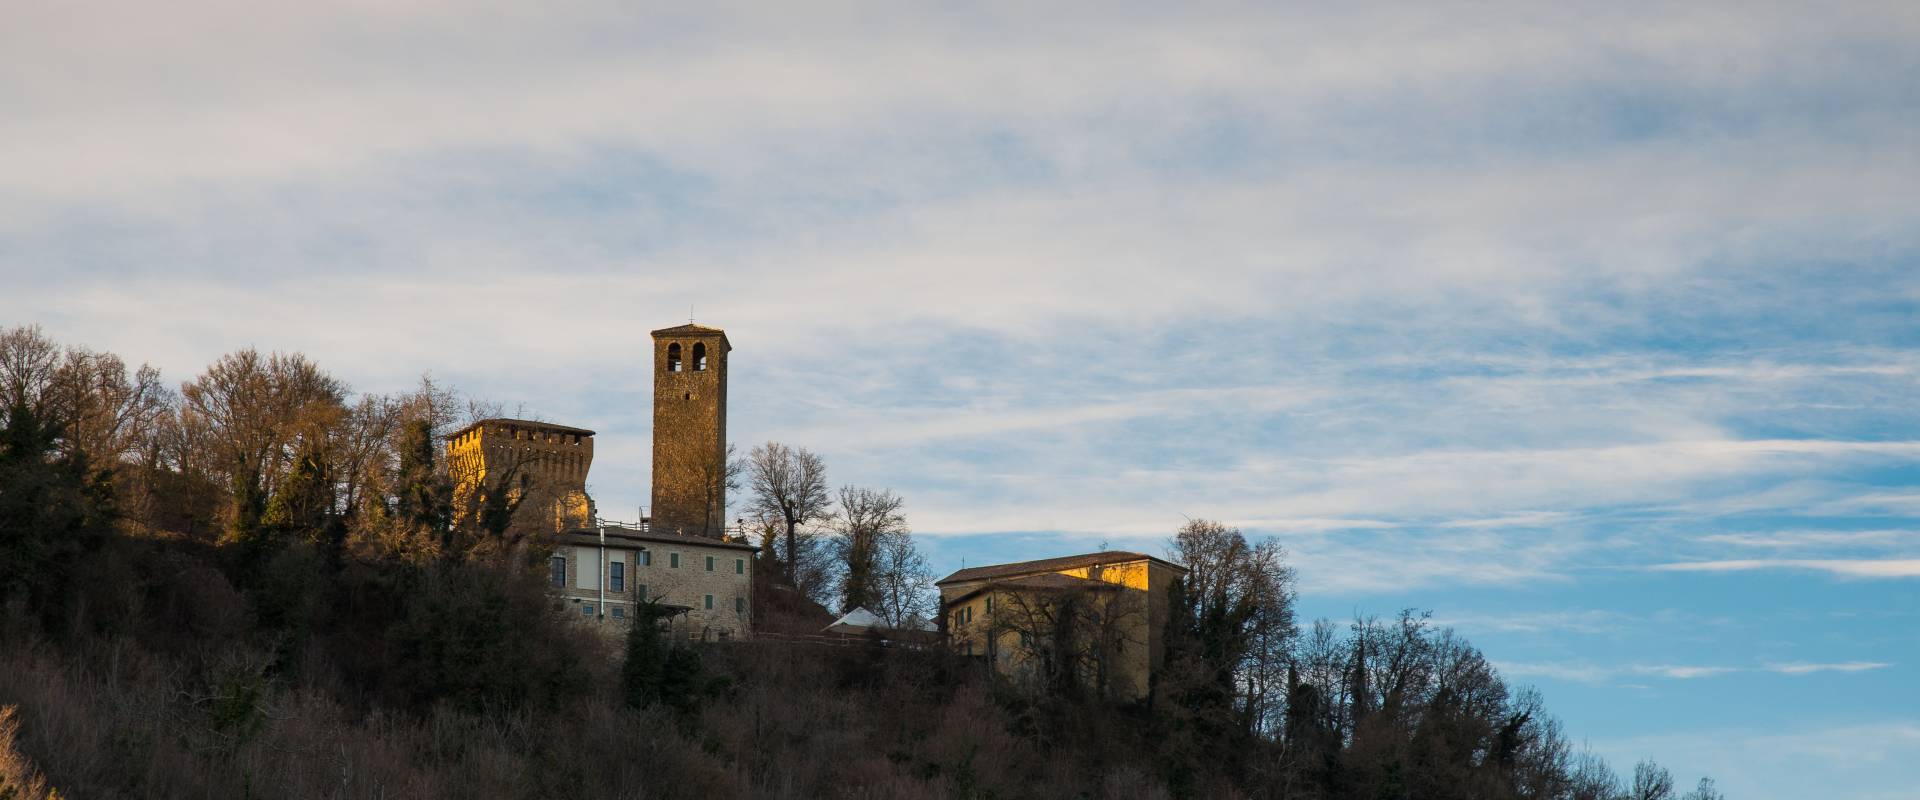 Castello di Sarzano foto di Lugarex